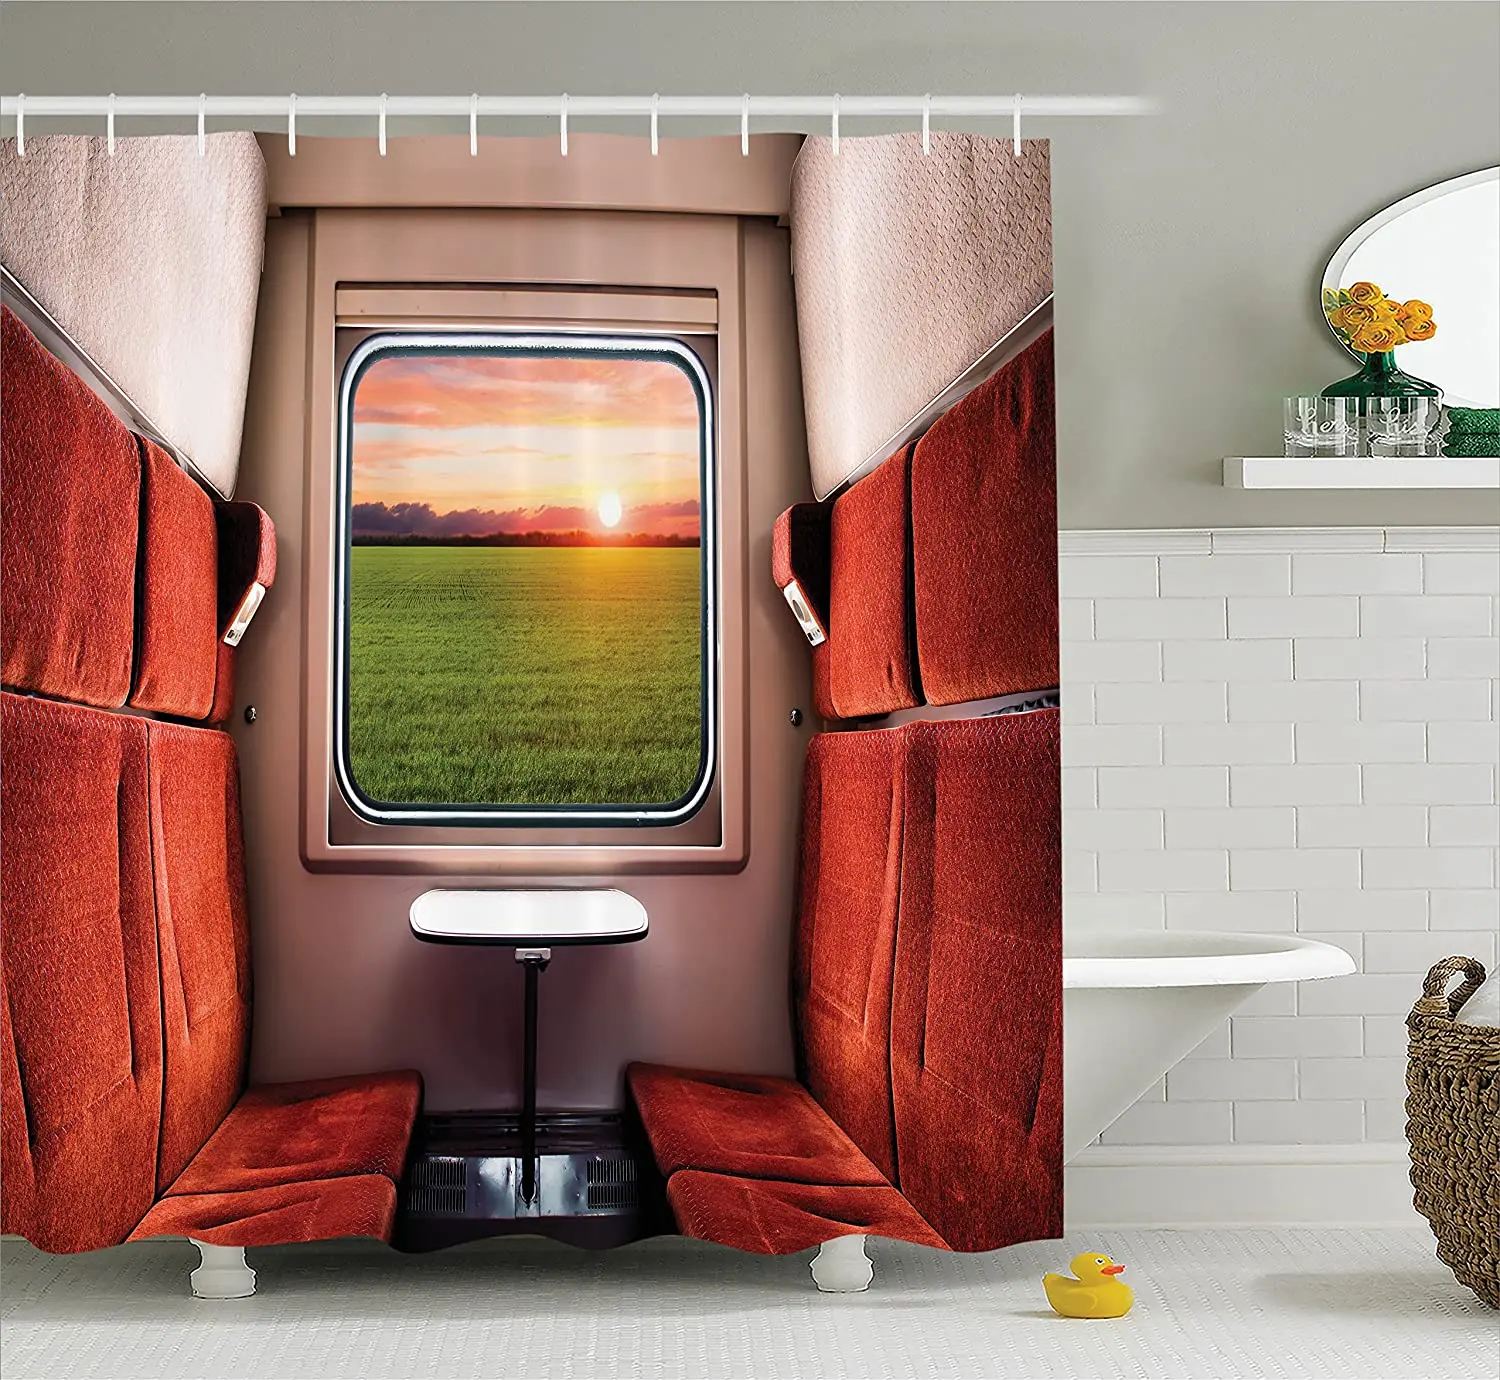 

Занавеска для душа для дома, декоративная занавеска с рисунком свежести природы из поезда, отсека для окна, железная дорога, ванной комнаты